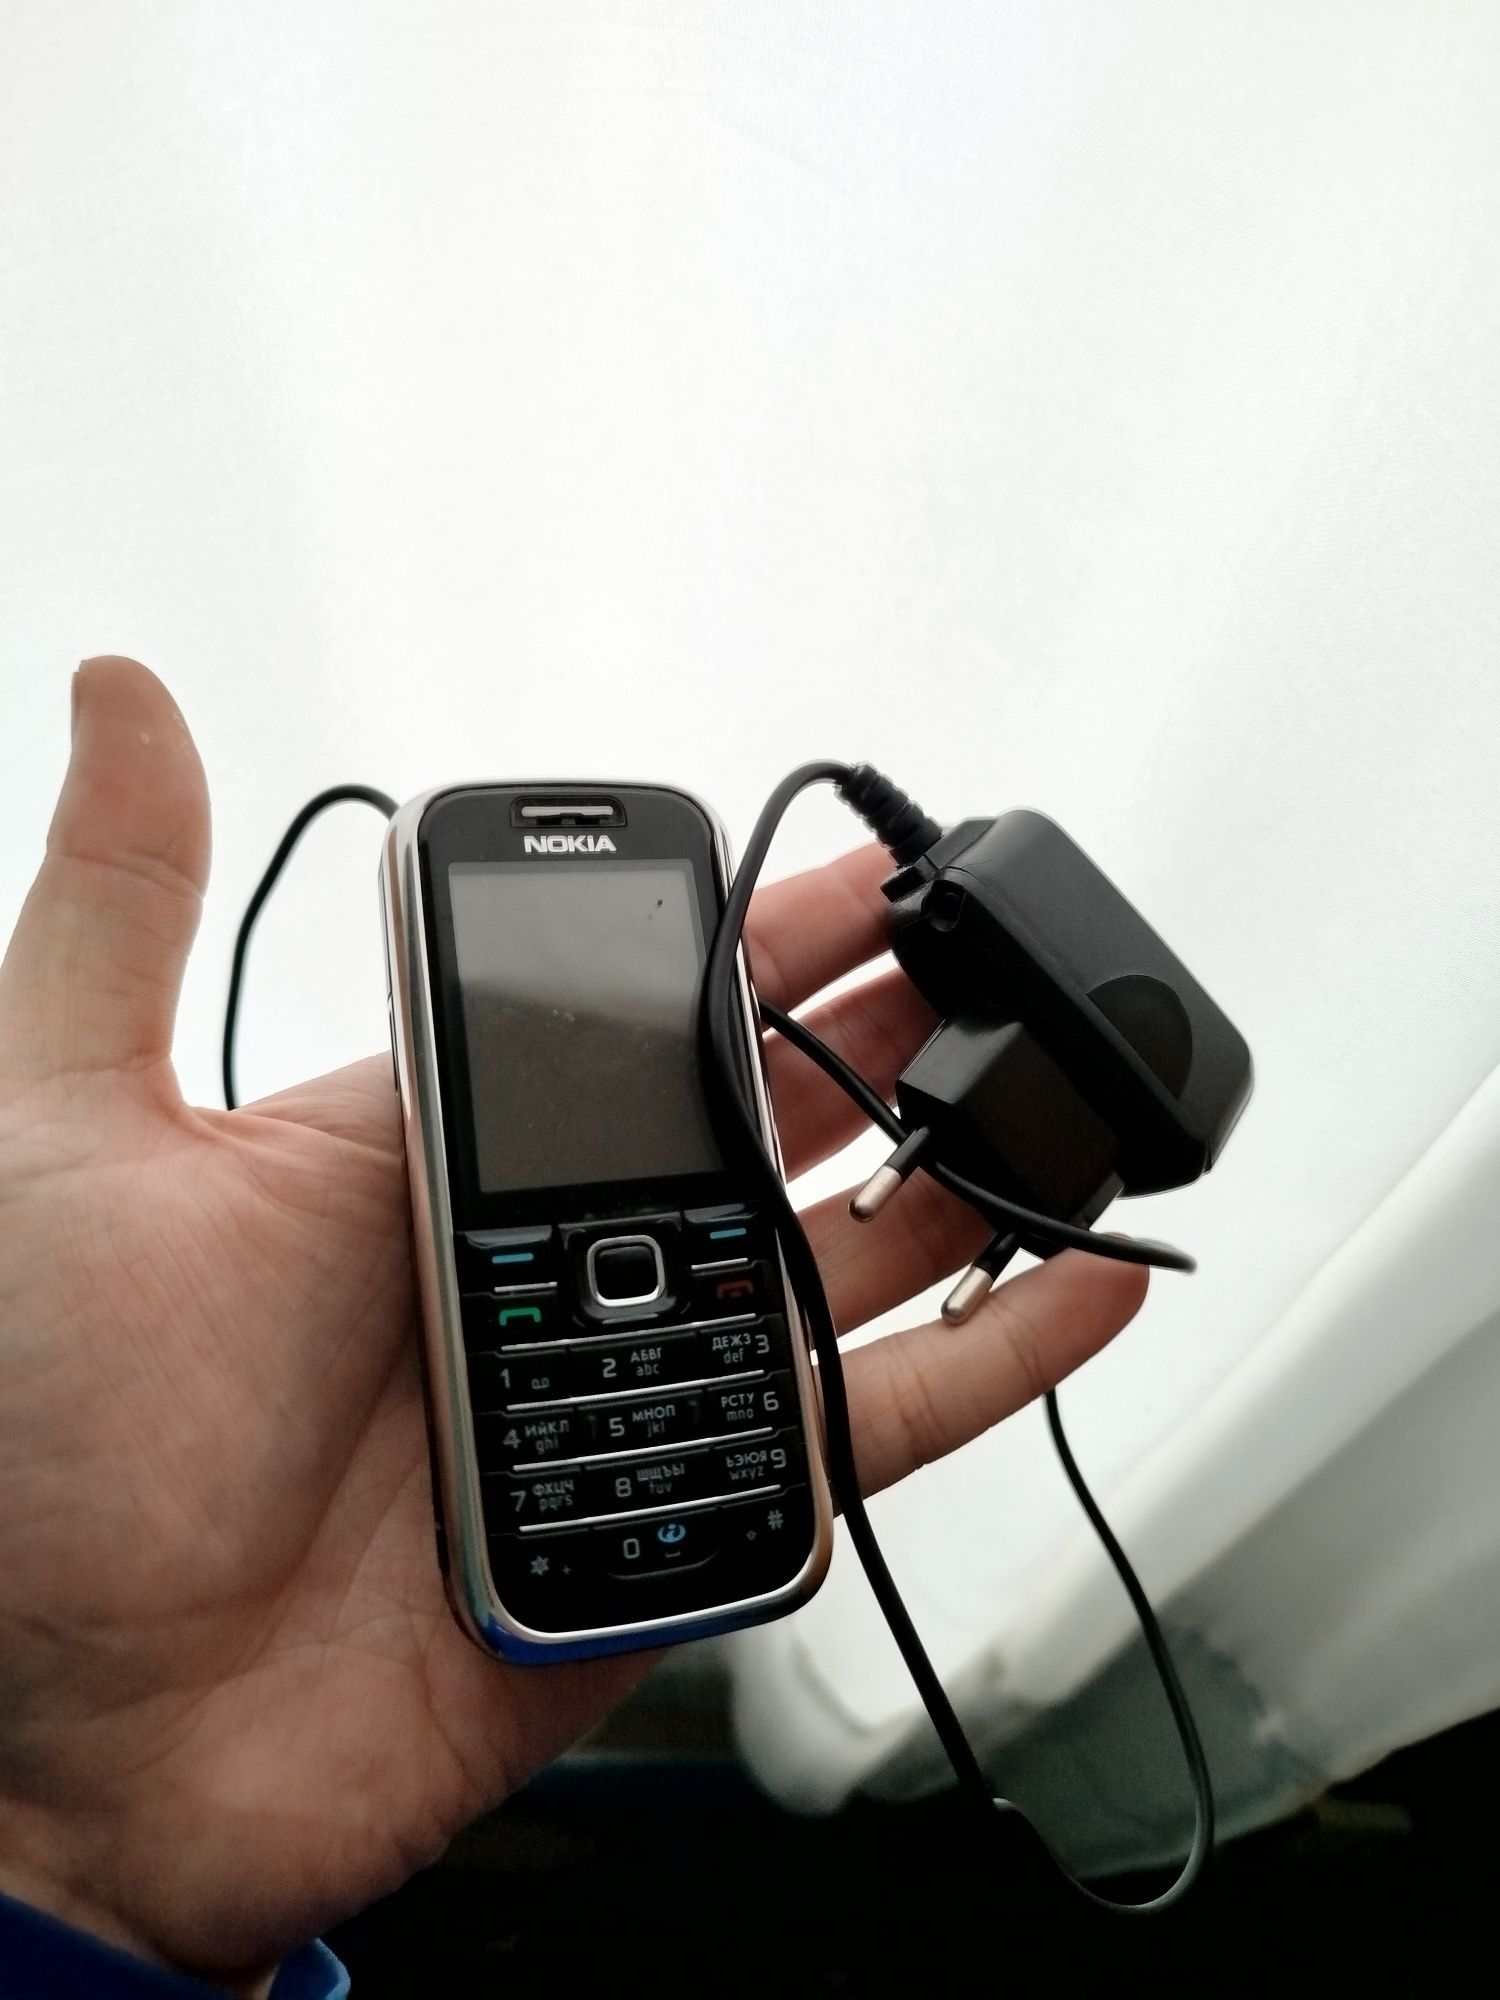 Nokia 6233 b/y Nokia